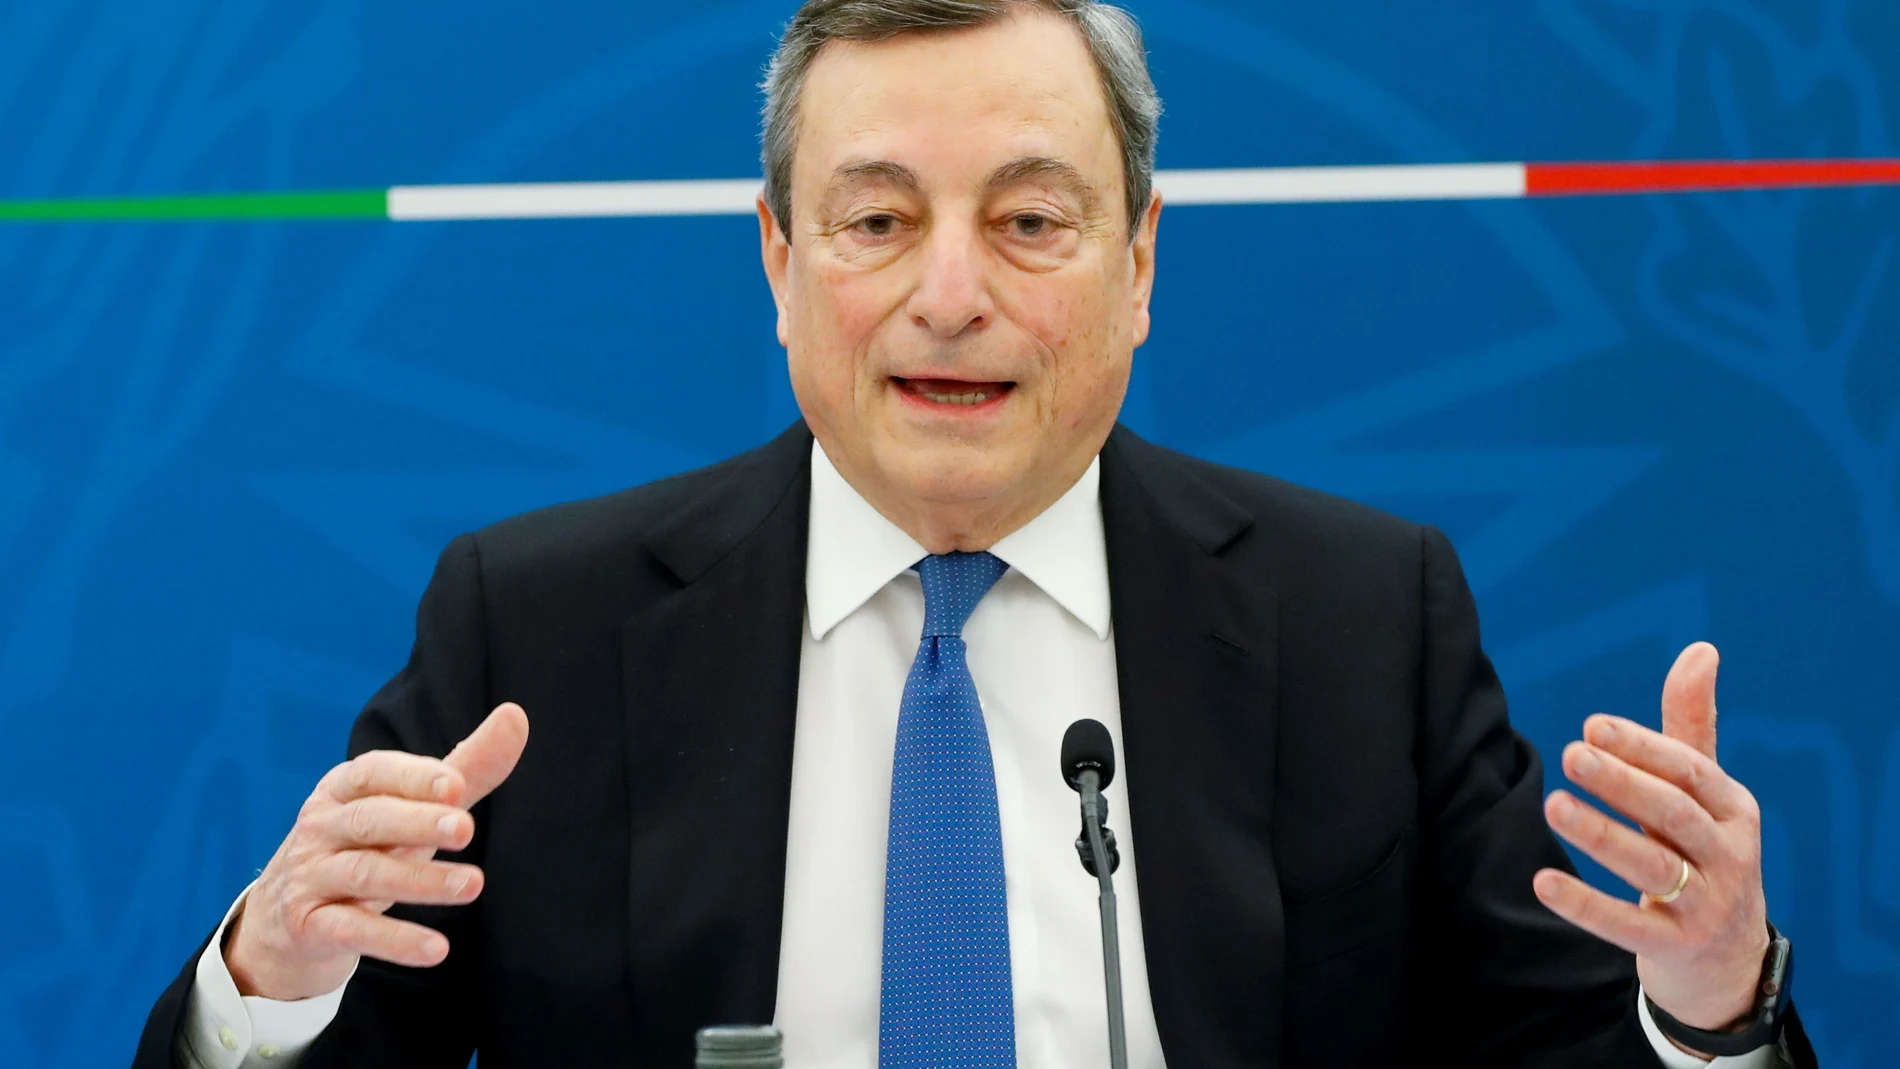 El primer ministro italiano, Mario Draghi, durante una rueda de prensa en Roma